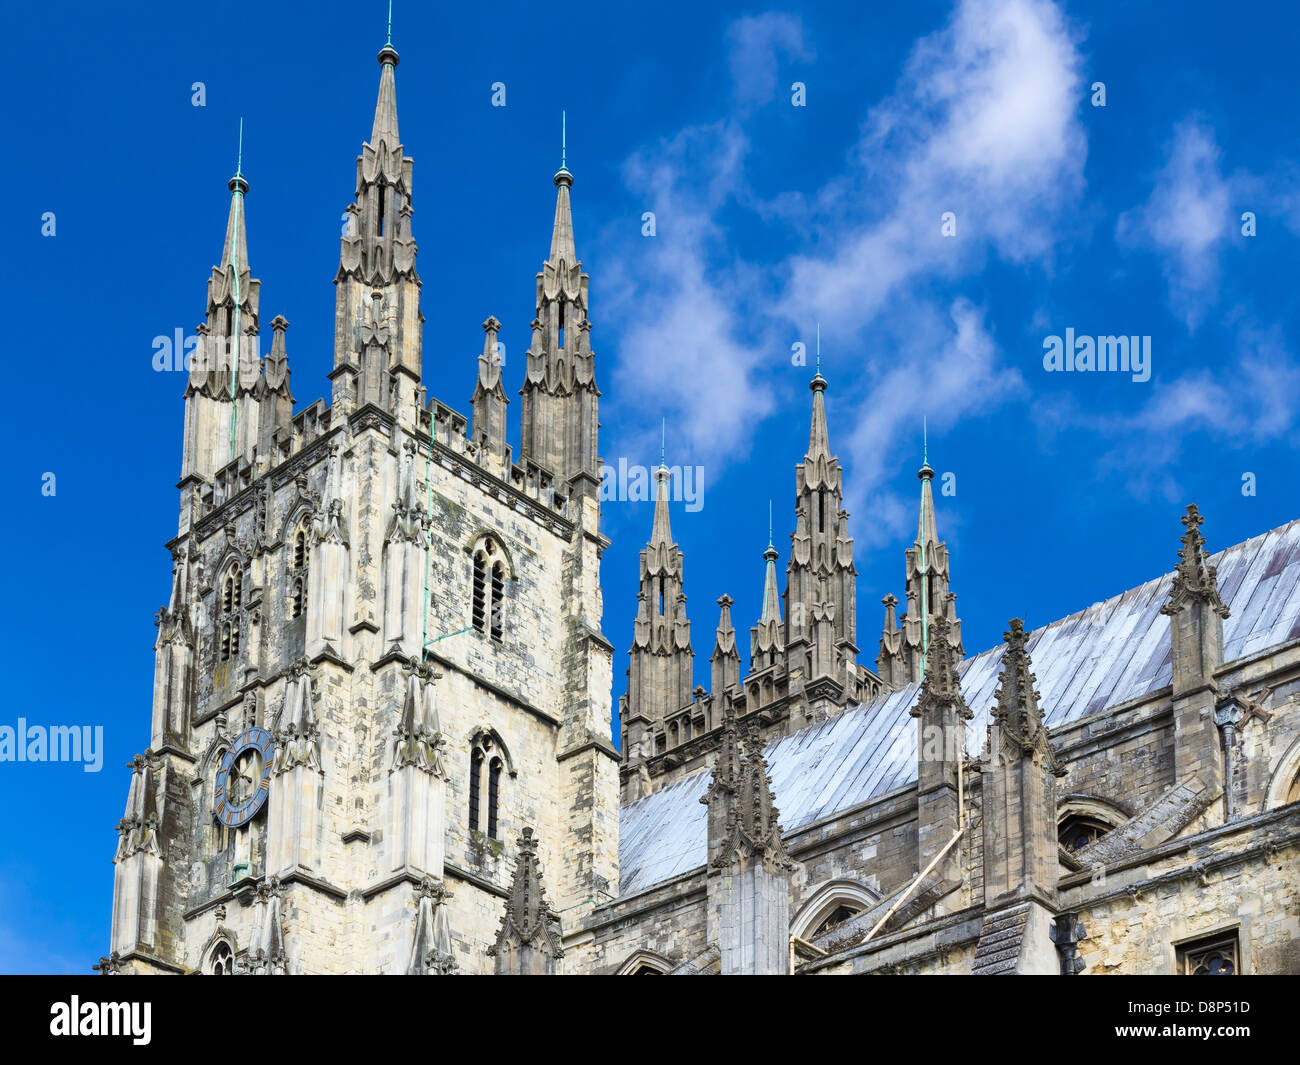 Le grand style gothique La Cathédrale de Canterbury, Kent England UK Banque D'Images